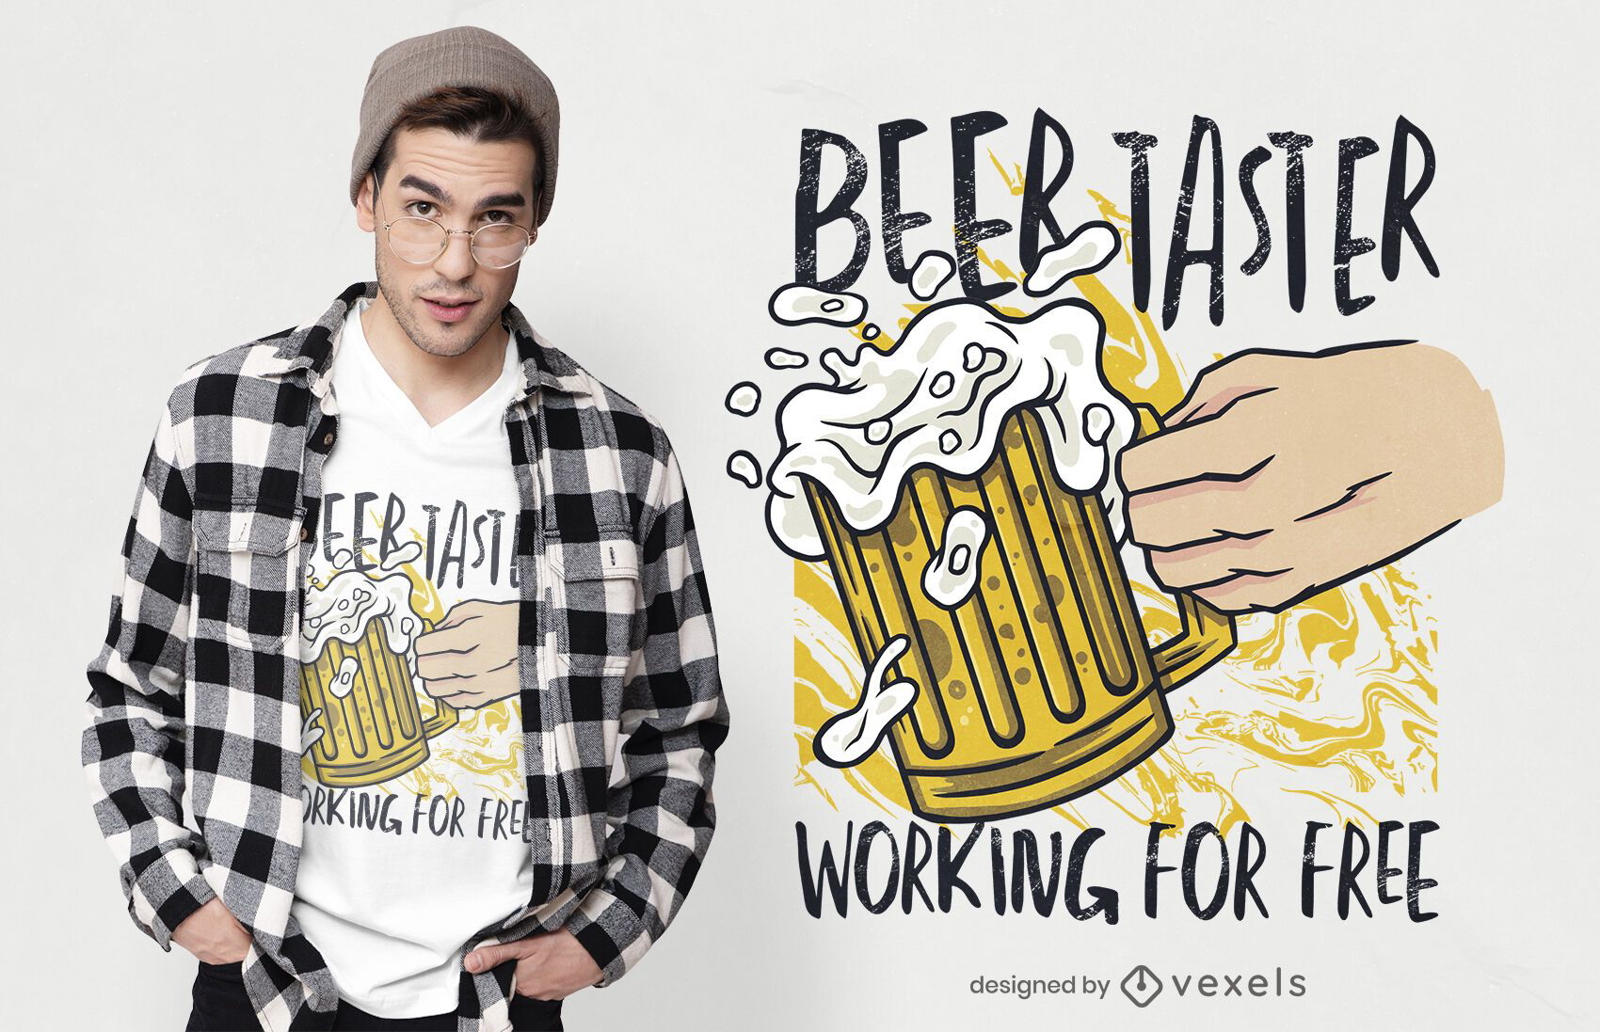 Beer taster t-shirt design